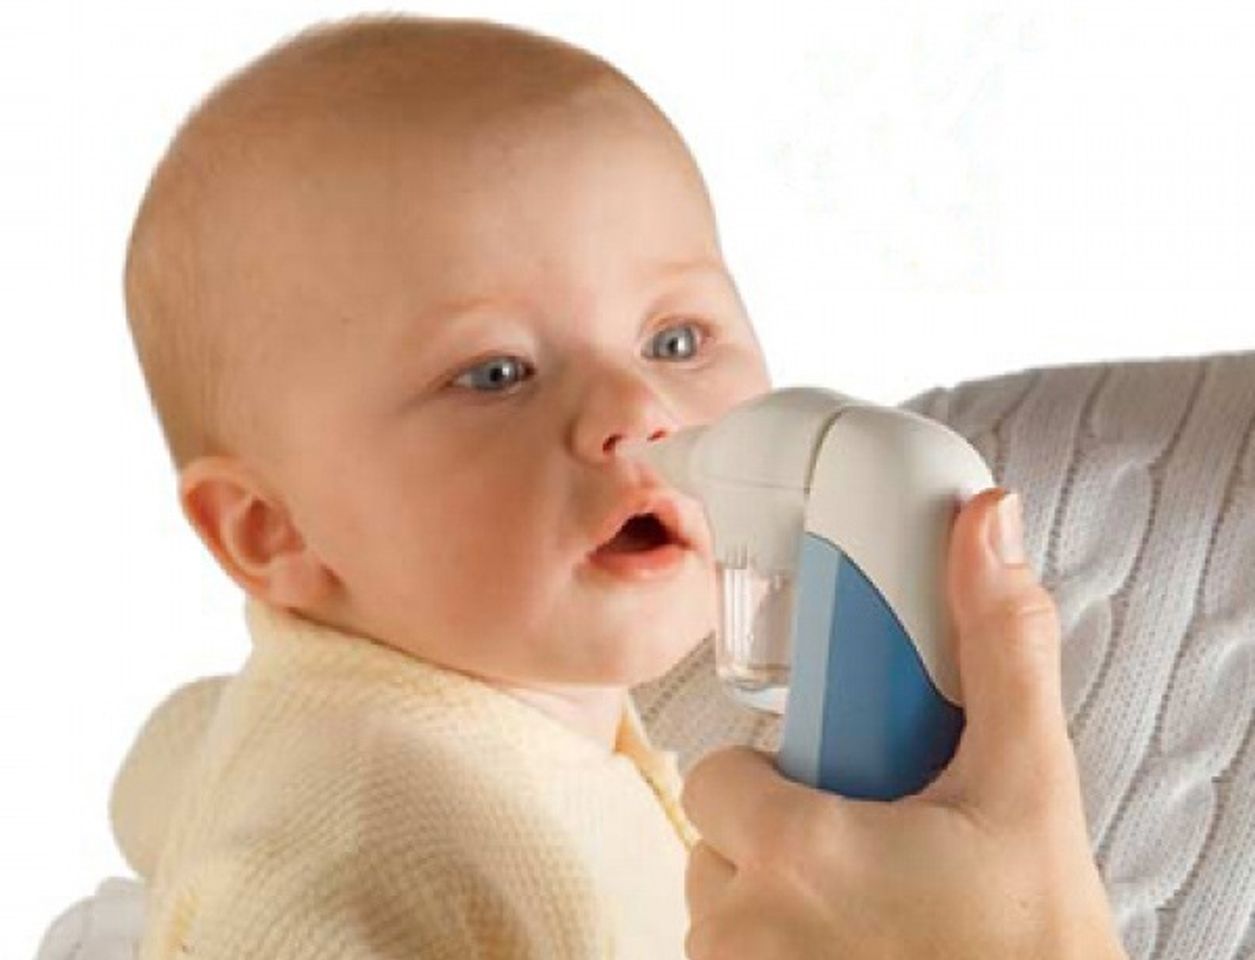 Máy hút mũi hiện đại đảm bảo an toàn, nhanh chóng, không gây đau rát cho bé